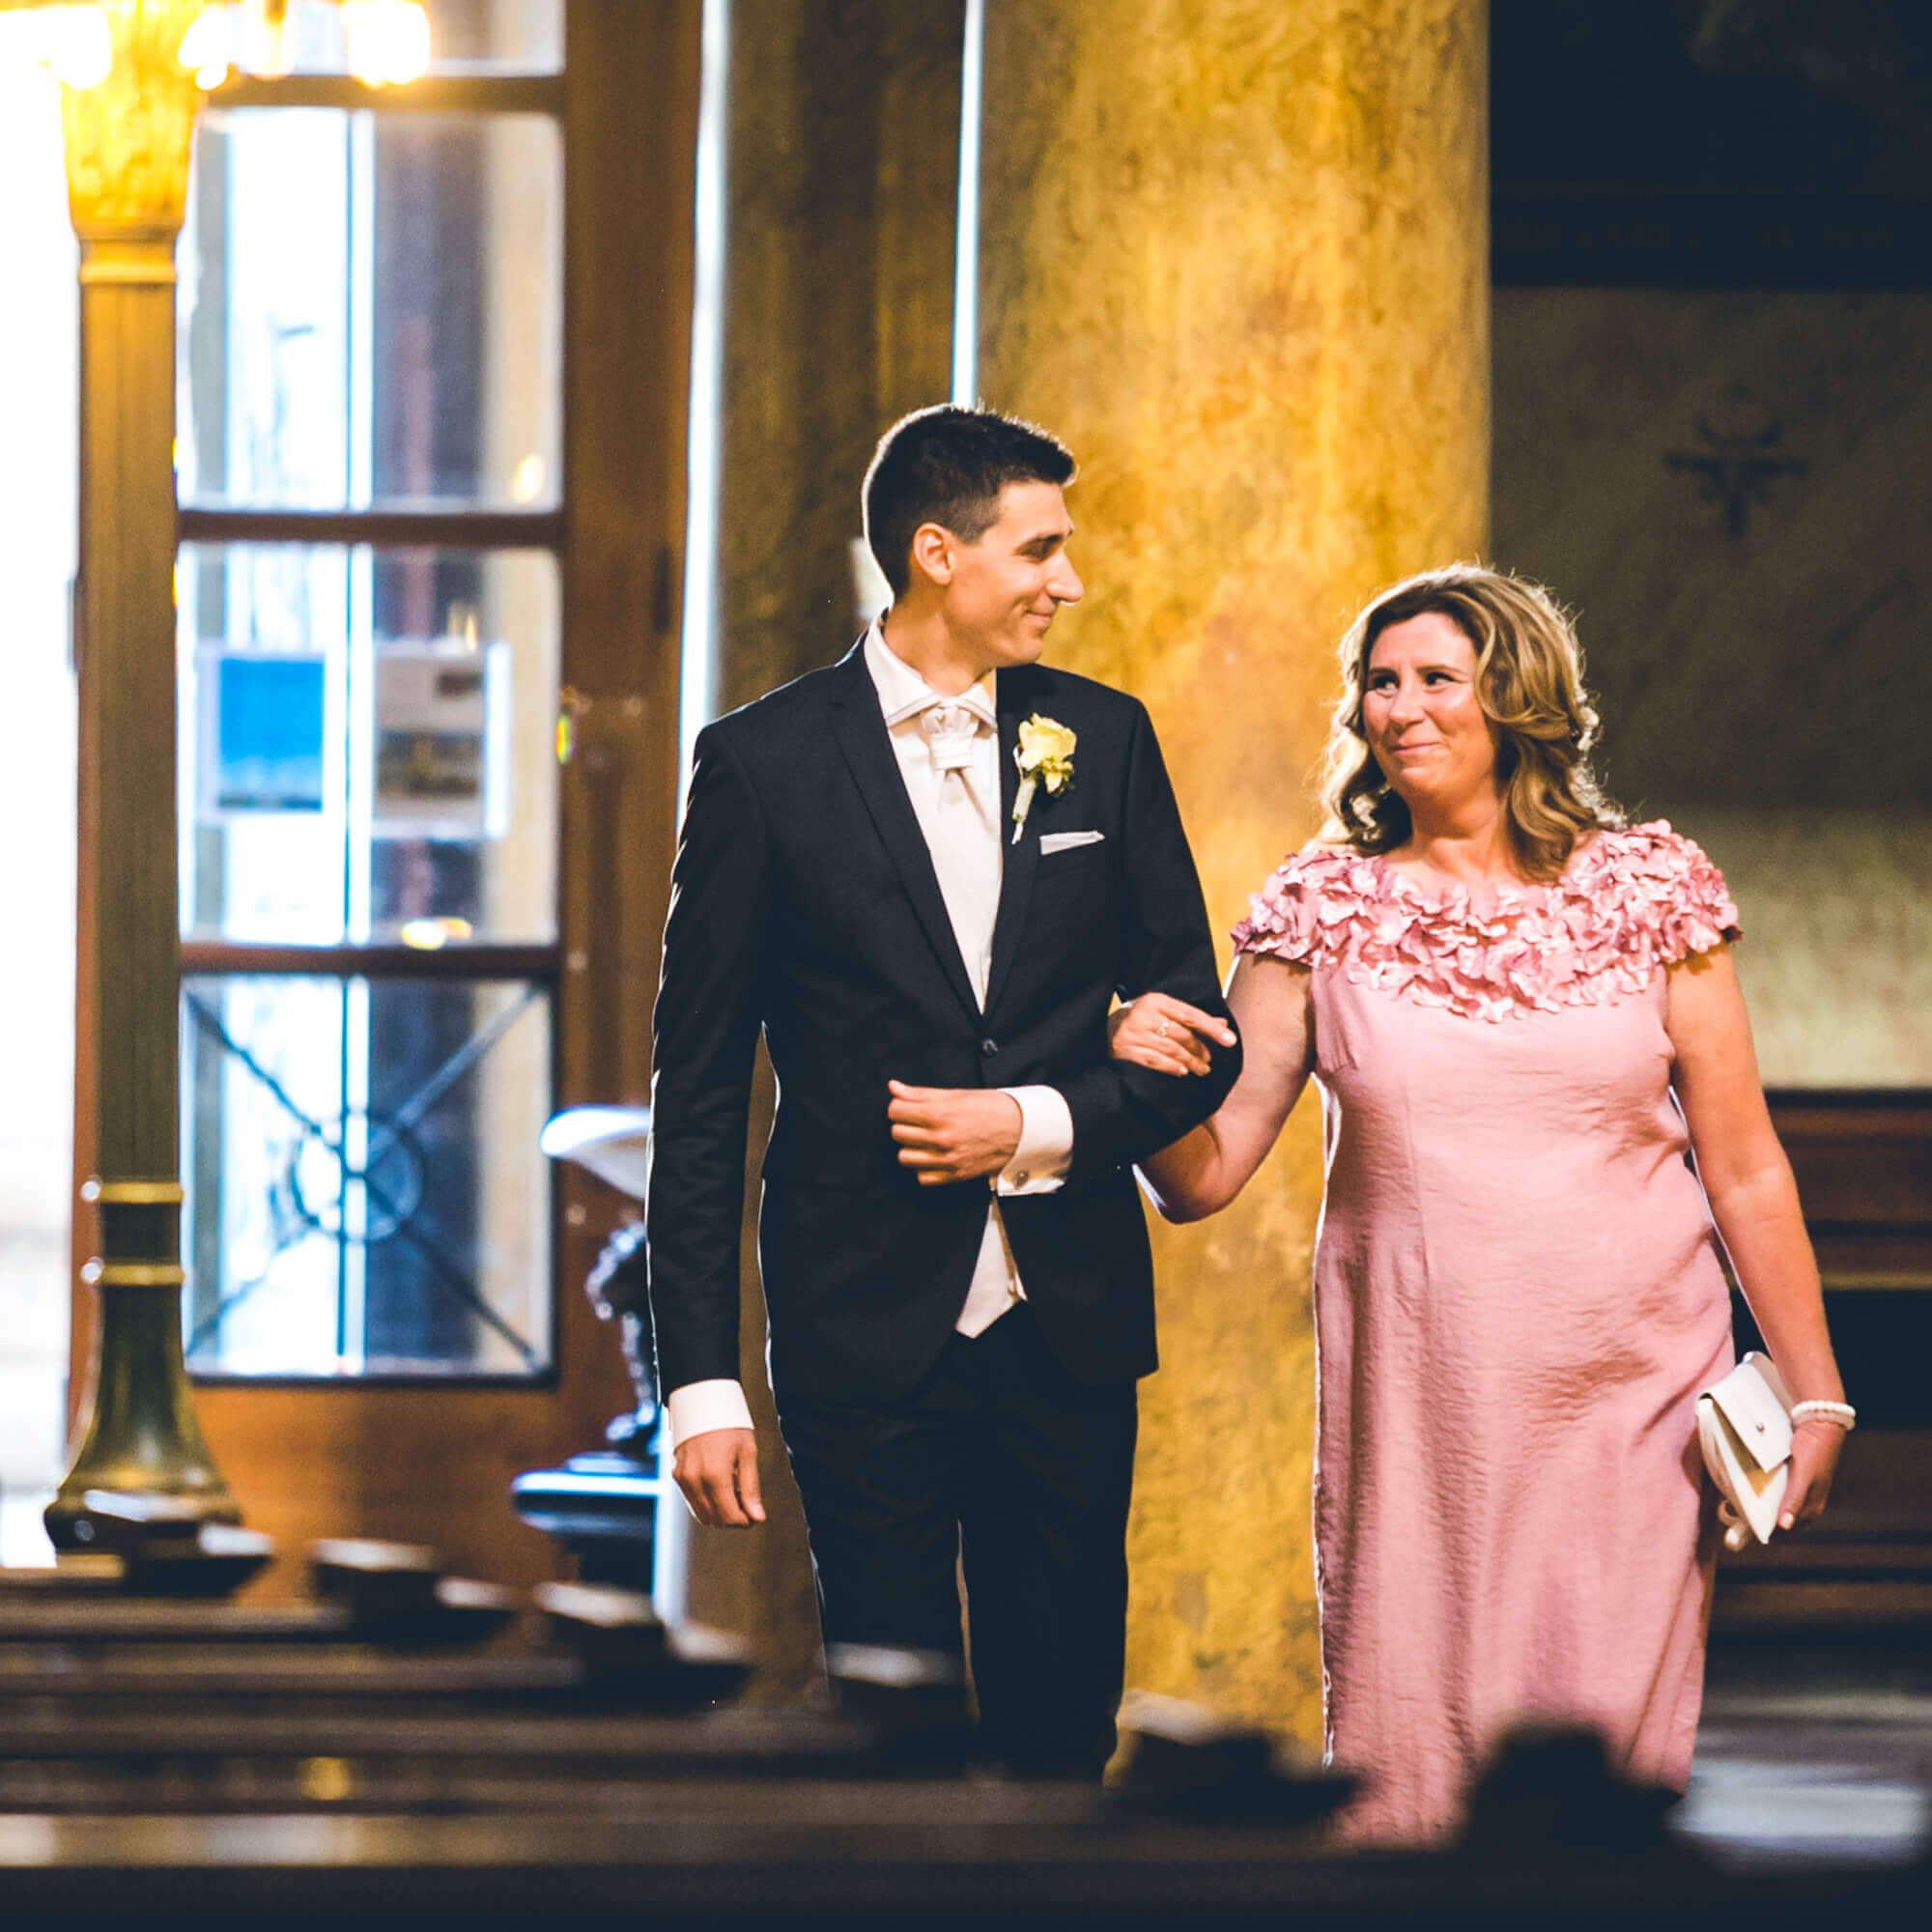 Esküvő fotózás során készített kép Tamásról és anyukájáról amikor sétálnak a templomban.